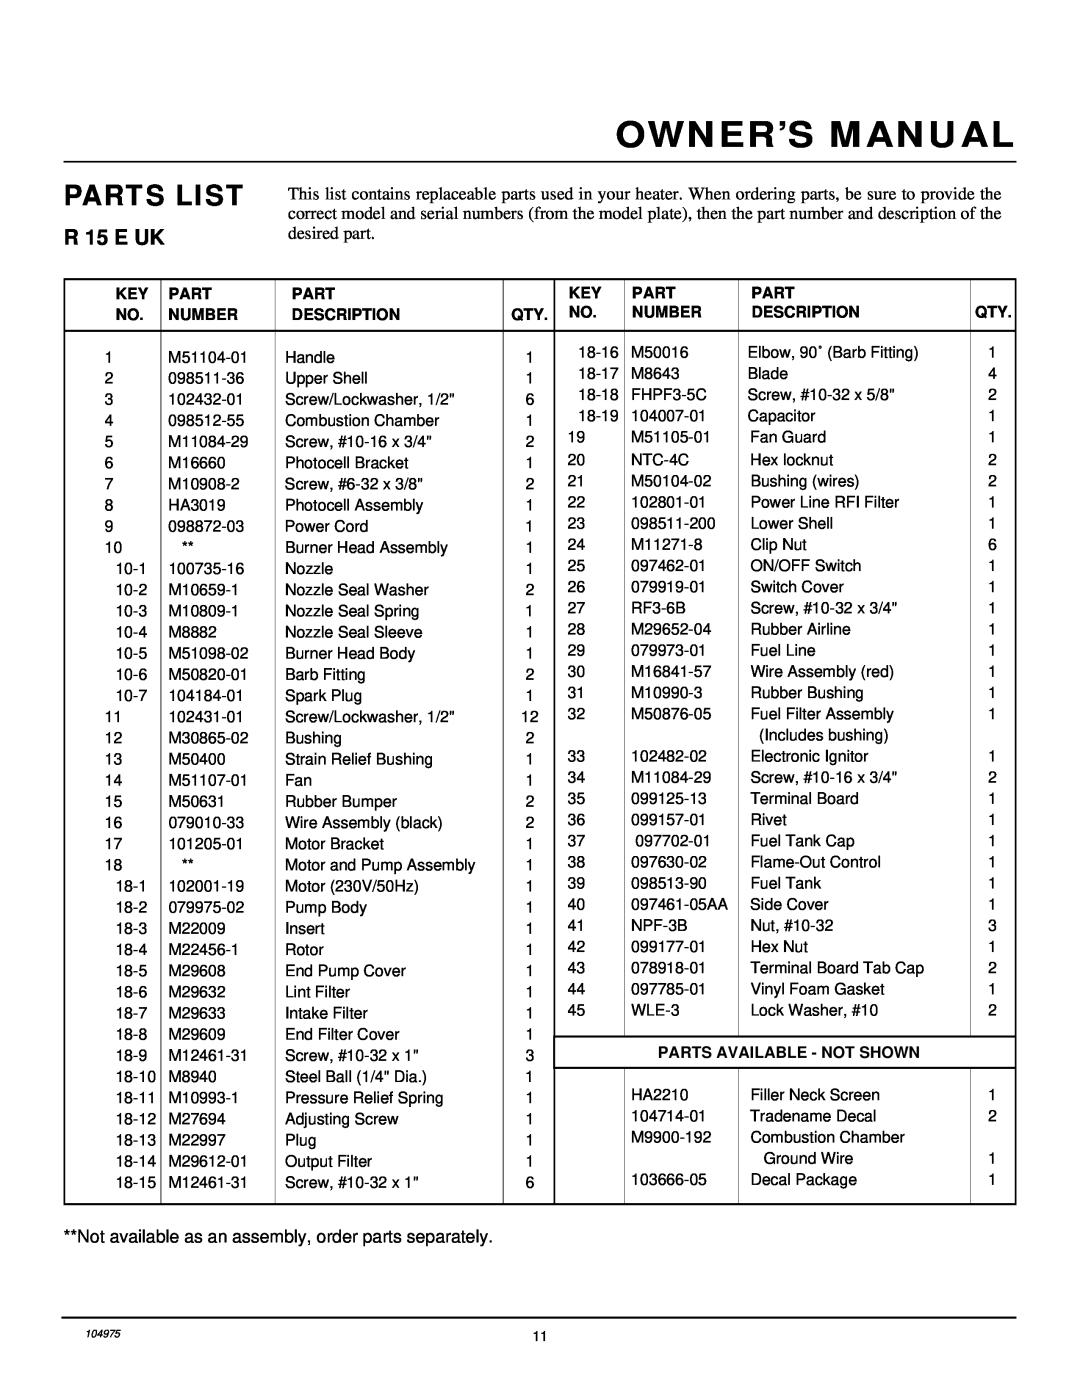 Desa R 15 E UK owner manual Parts List, Number, Description, Parts Available - Not Shown 